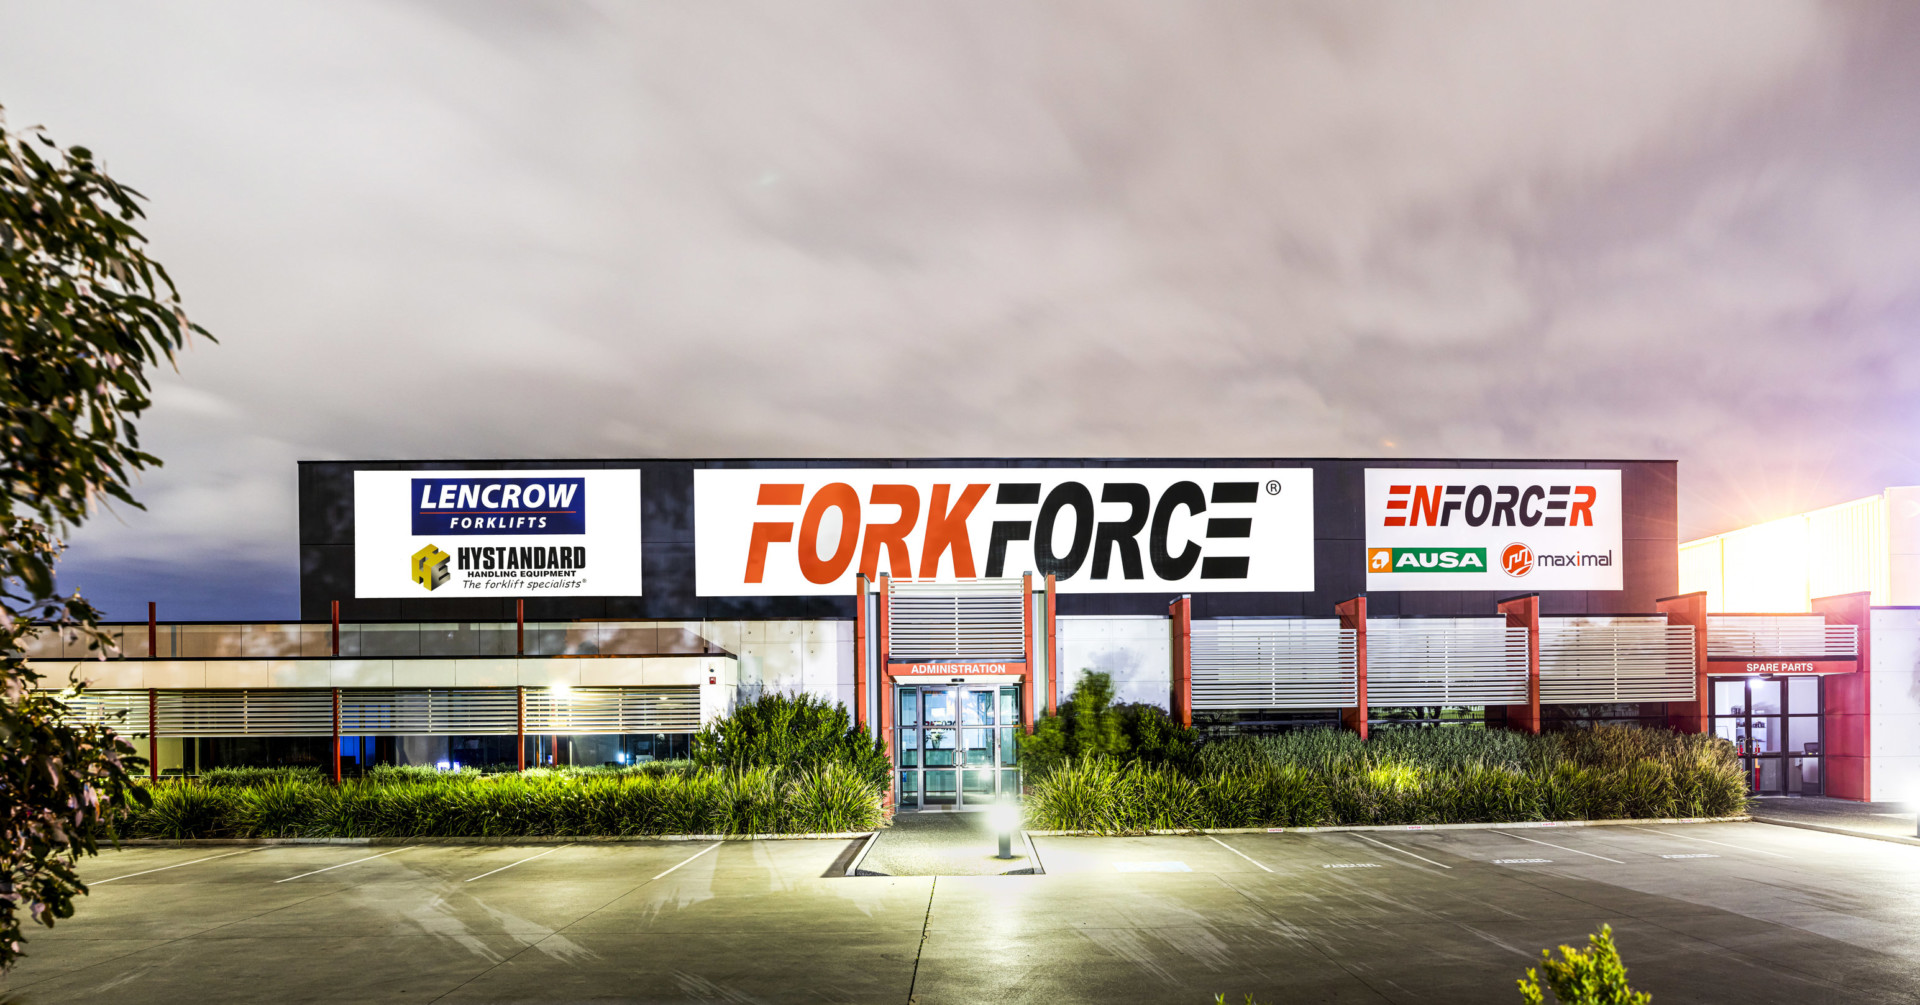 Fork Force Melbourne location